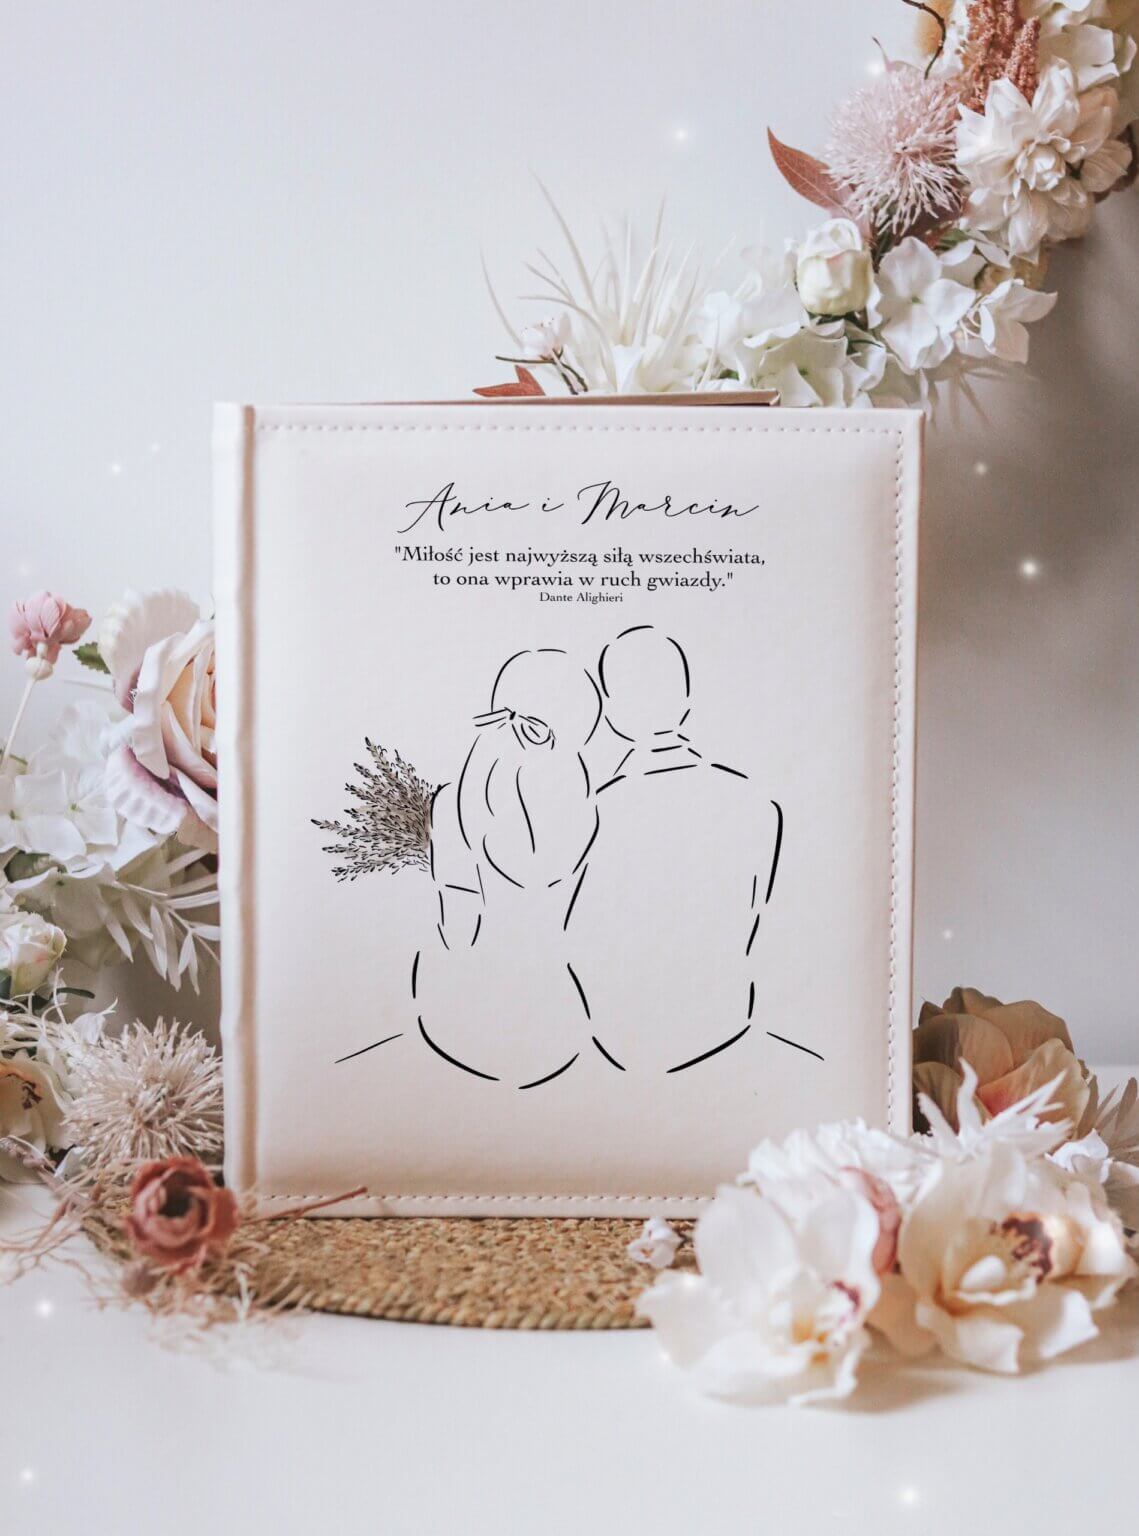 Personalizowany album na zdjęcia – romantyczny prezent na Walentynki dla Par